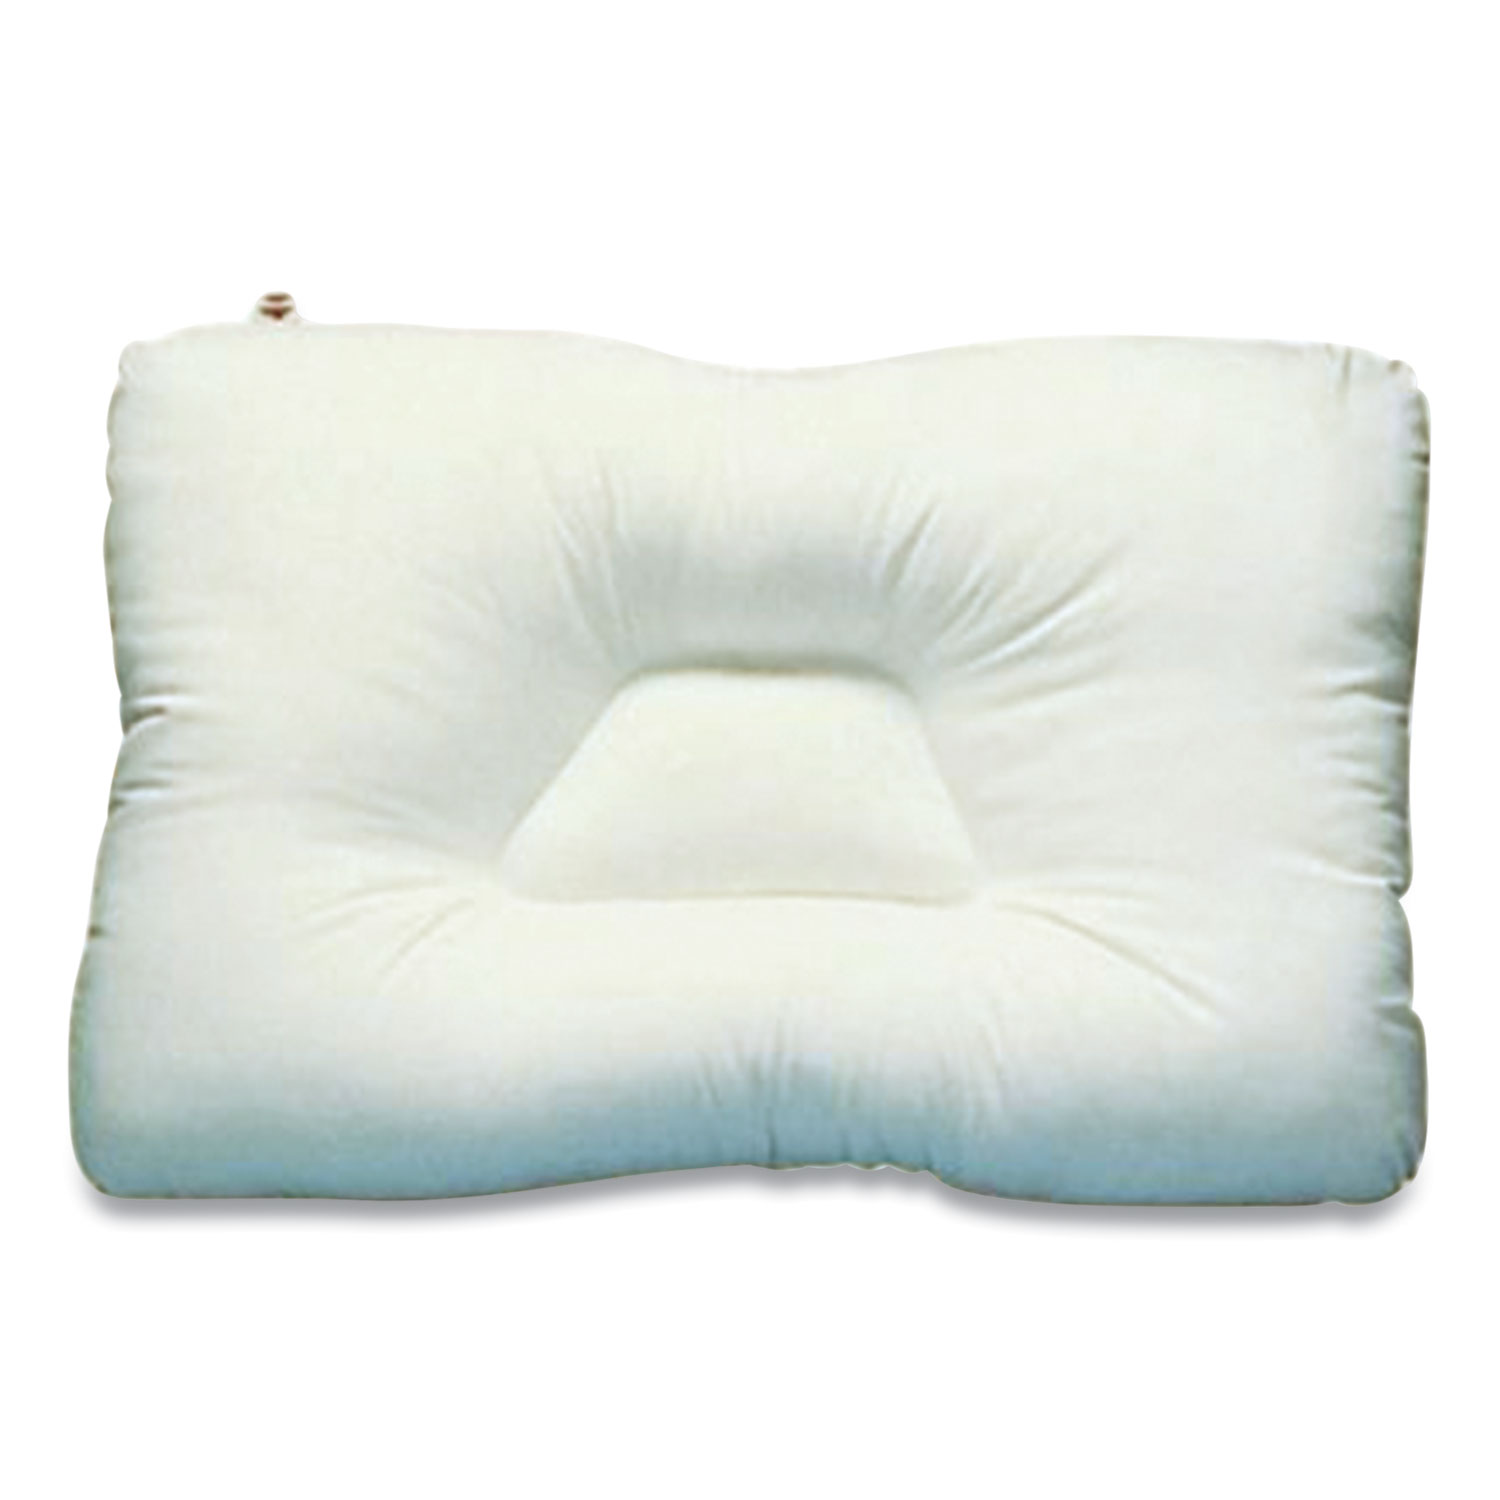 Core Products® D-Core Cervical Pillow, Mid-Size, 23 x 15, White